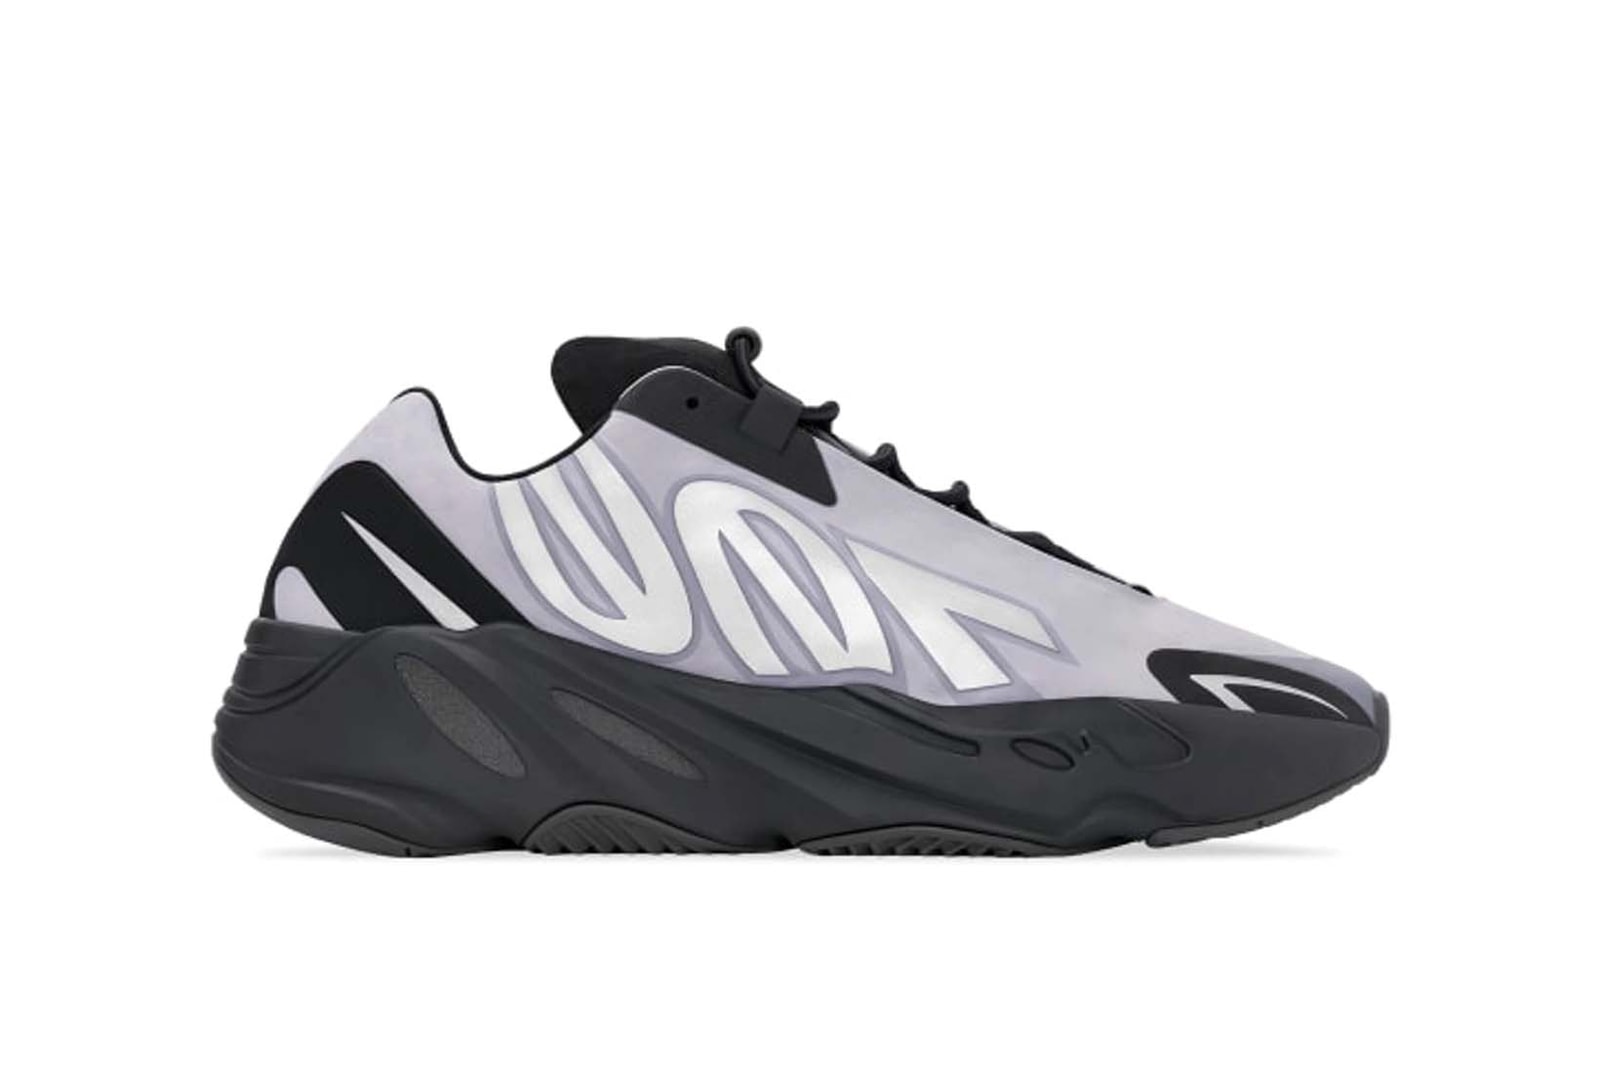 Sneaker Release Calendar Nike Dunk Yeezy adidas Foam Runner Price Release Info